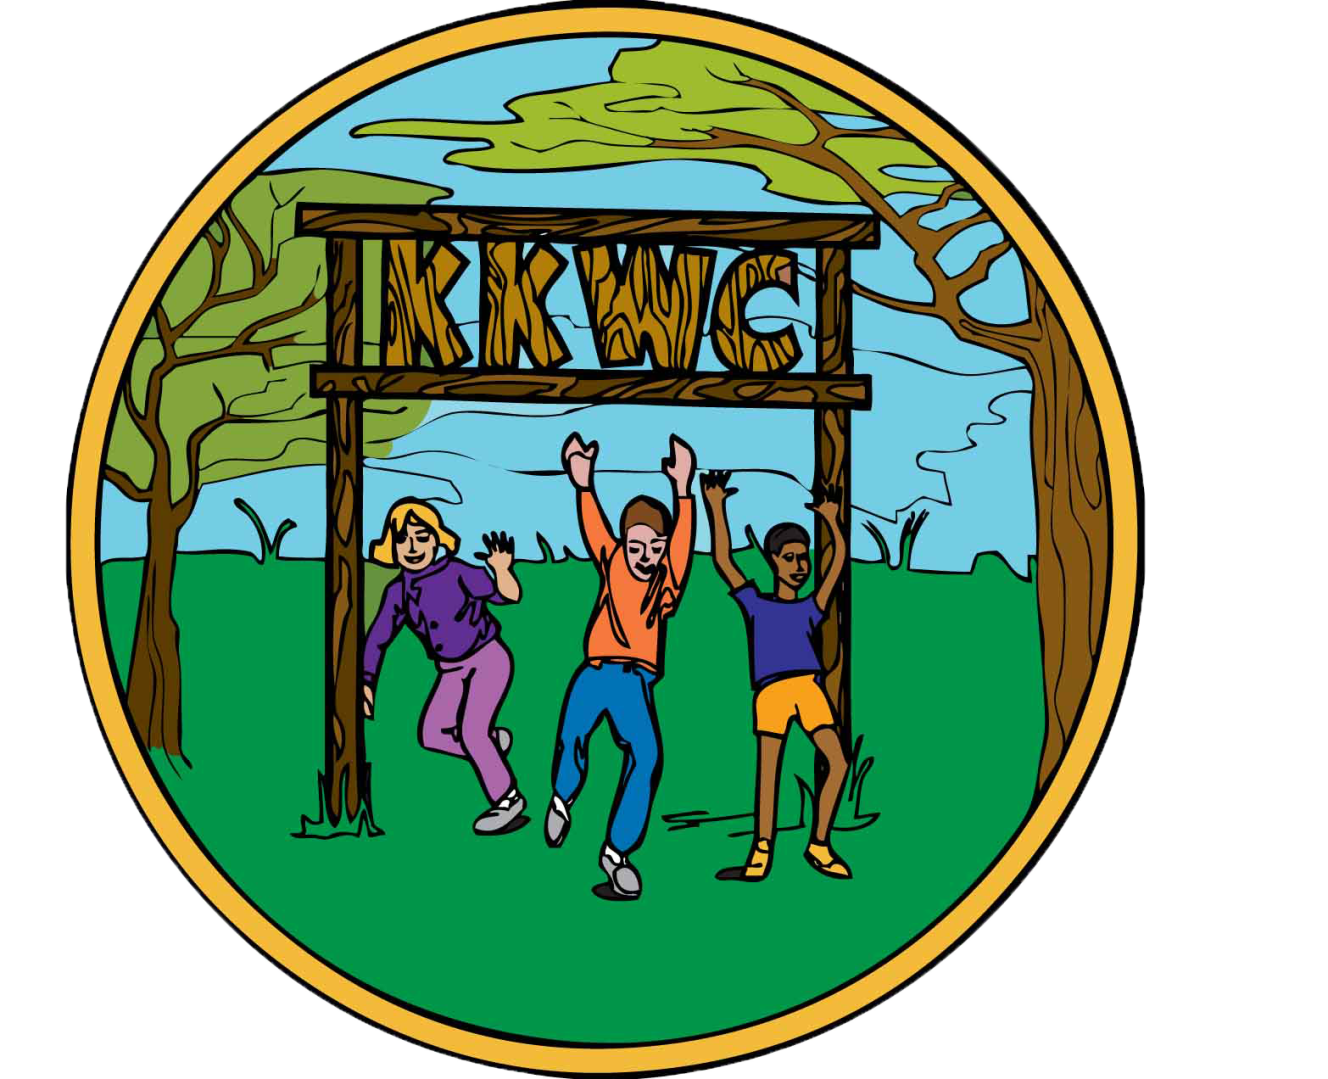 kkwc logo circle element